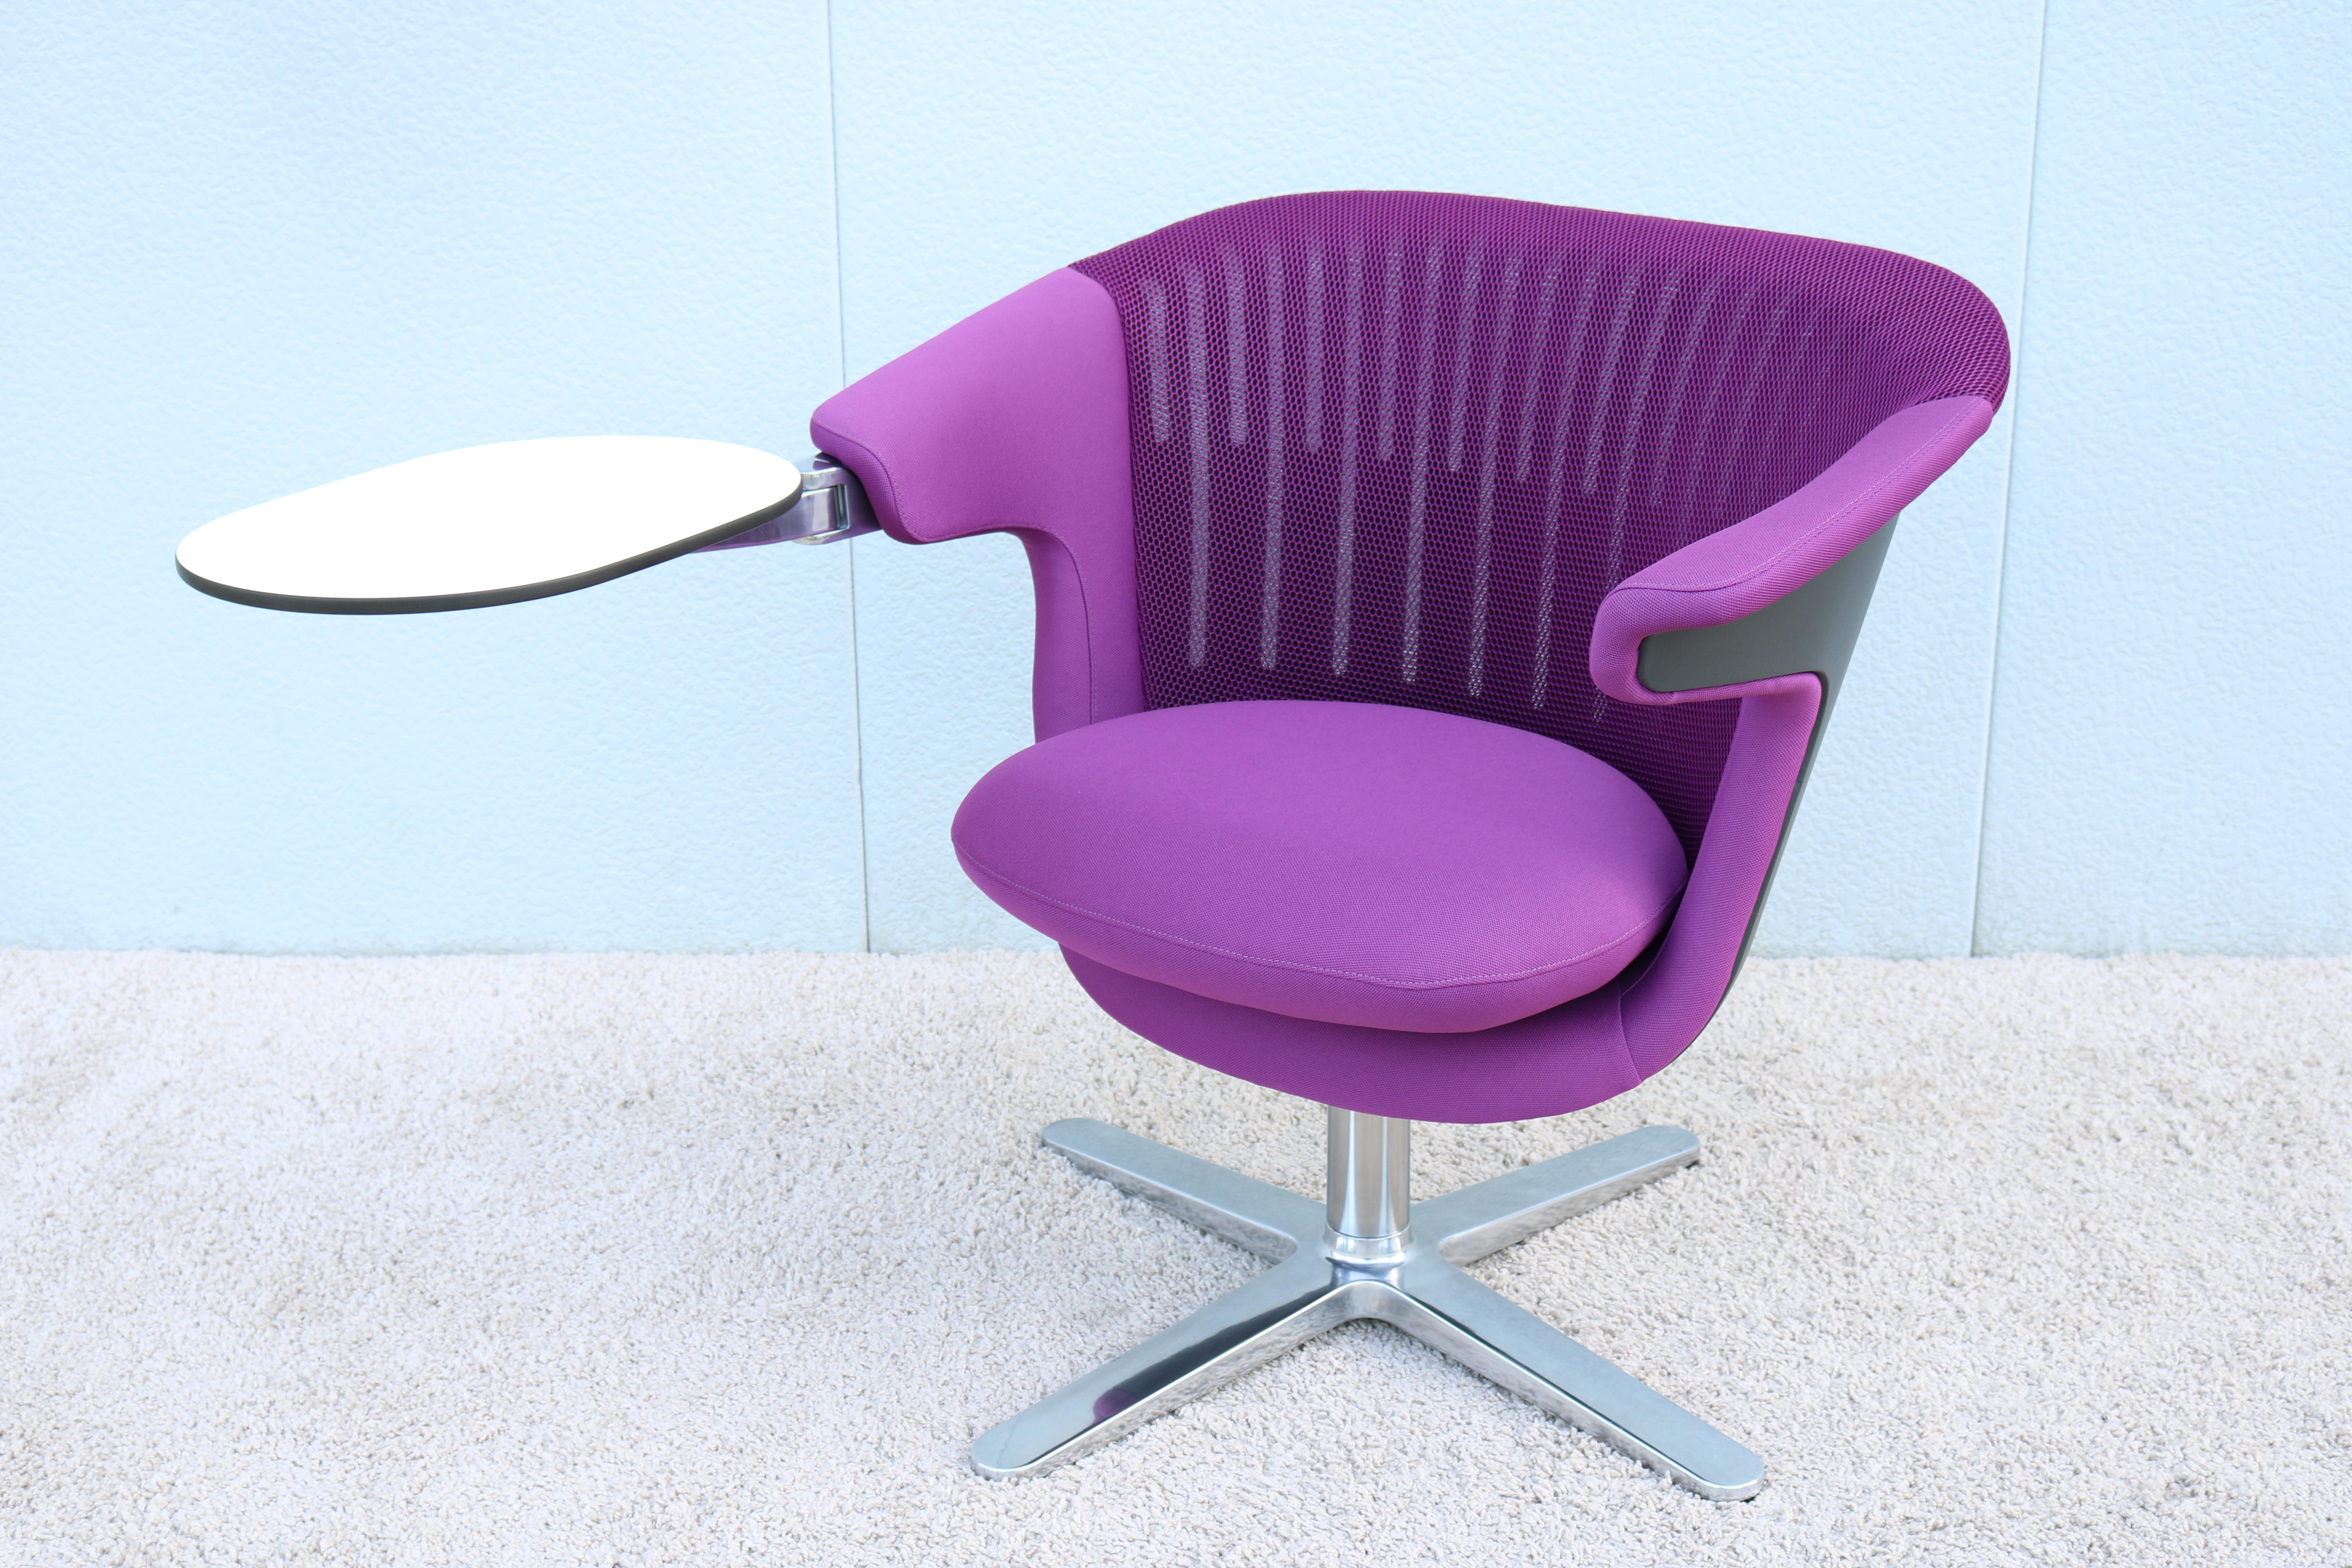 La chaise de salon moderne i2i est très confortable et bien conçue. Elle est dotée d'un double mécanisme de pivotement indépendant, qui permet de faire pivoter le dossier ou l'assise seulement pour changer rapidement de posture. La coque flexible du